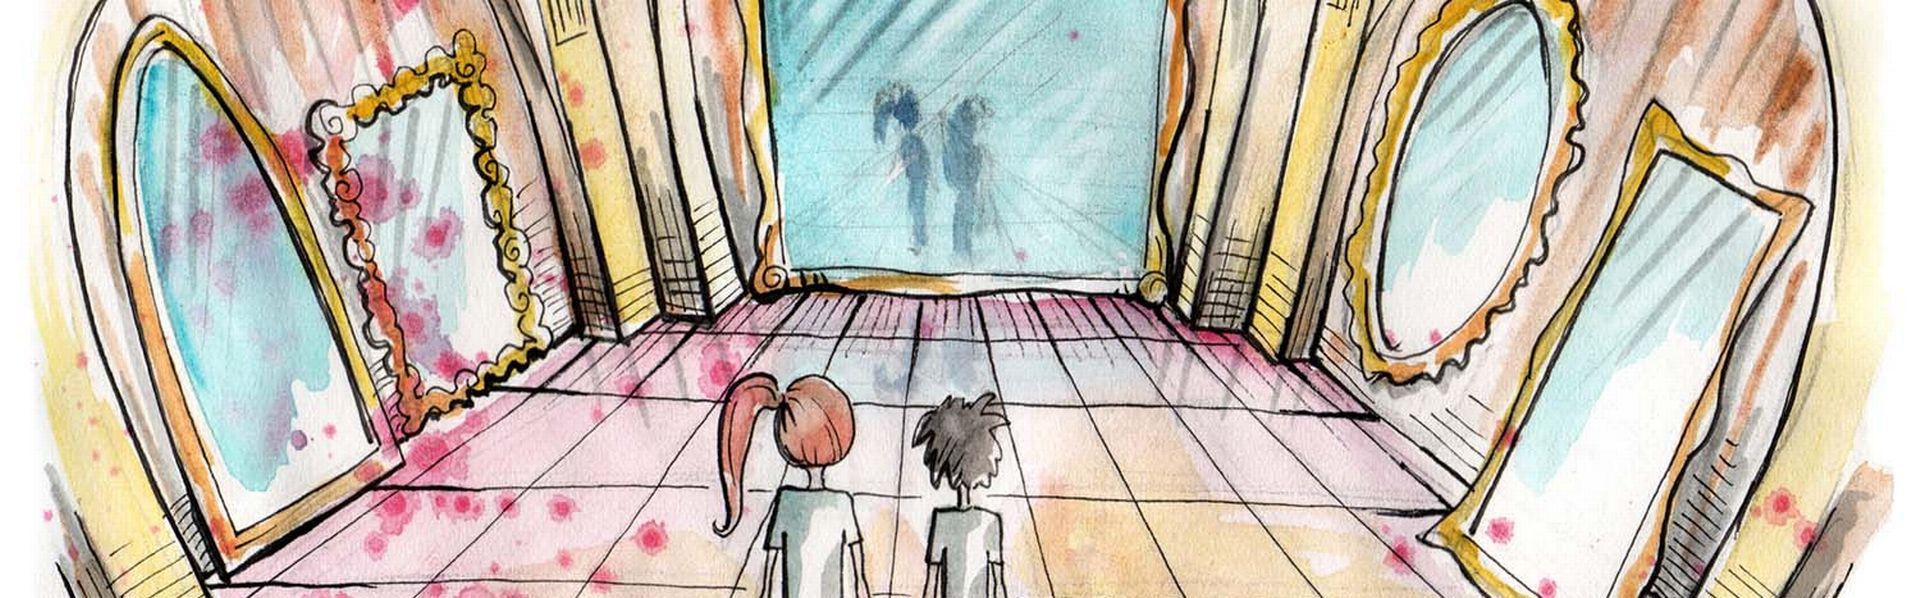 Deux enfants debout dans une galerie de glaces. [sSplajn - Depositphotos]